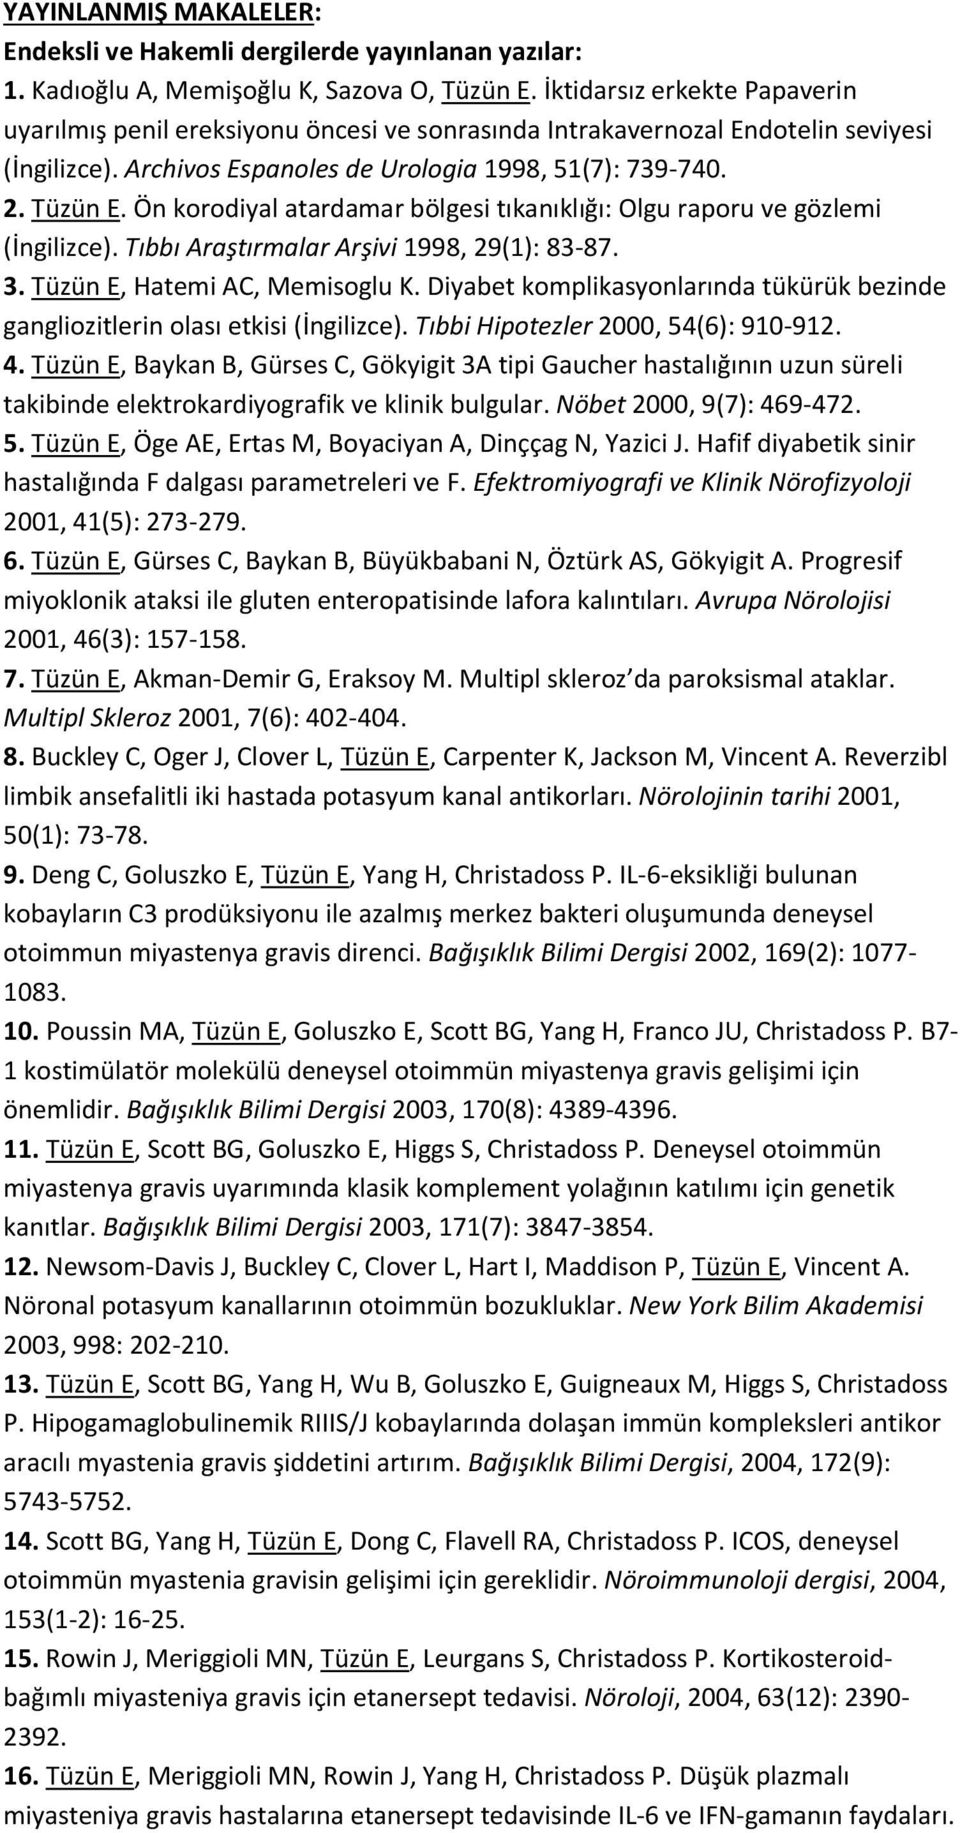 Ön korodiyal atardamar bölgesi tıkanıklığı: Olgu raporu ve gözlemi (İngilizce). Tıbbı Araştırmalar Arşivi 1998, 29(1): 83-87. 3. Tüzün E, Hatemi AC, Memisoglu K.